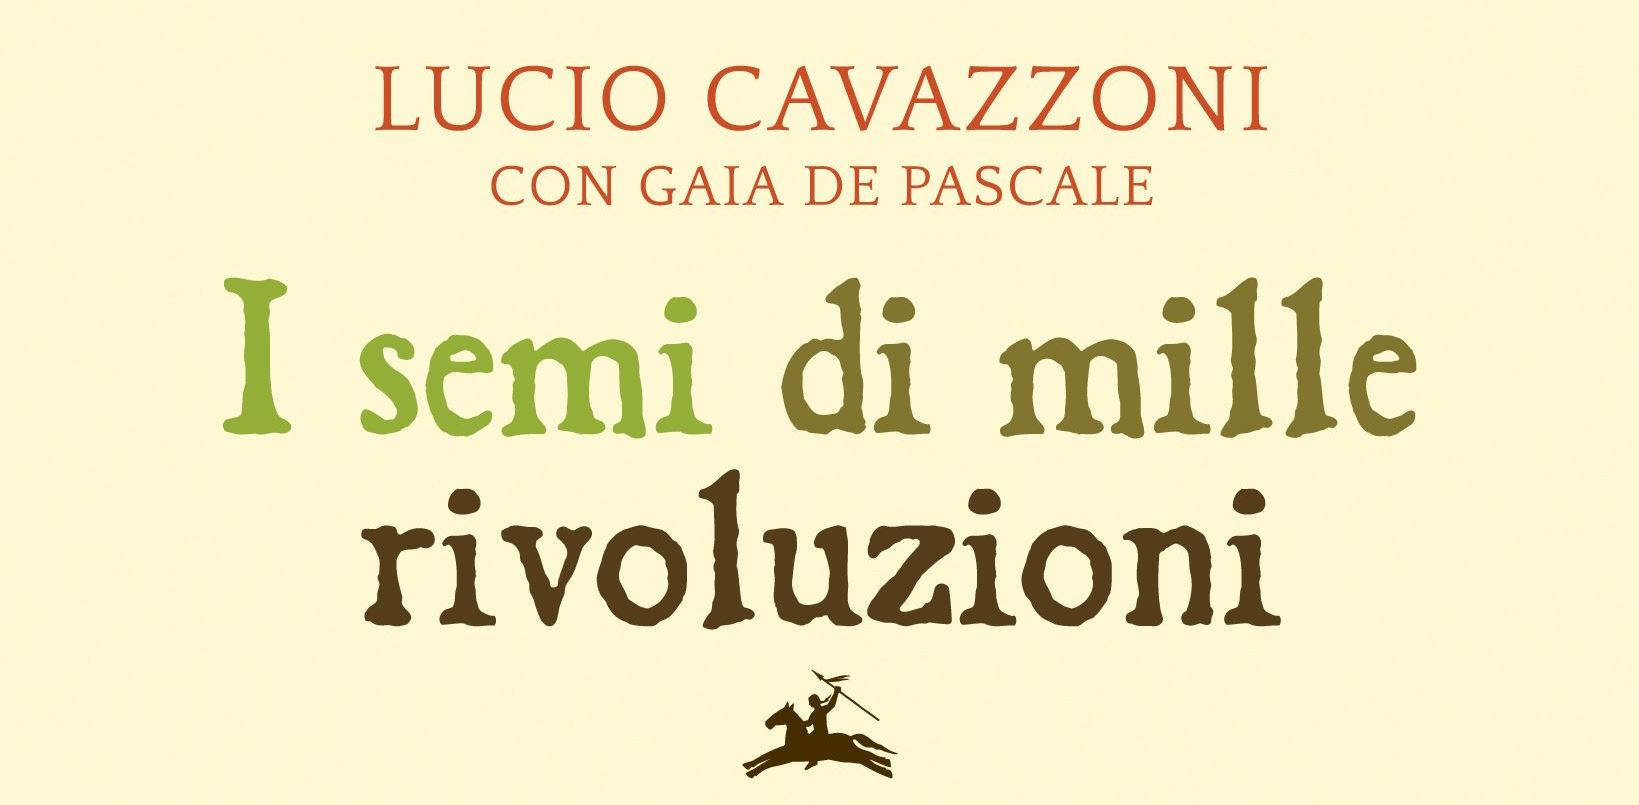 Cavazzoni-I-semi-mille-rivoluzioni - Copia